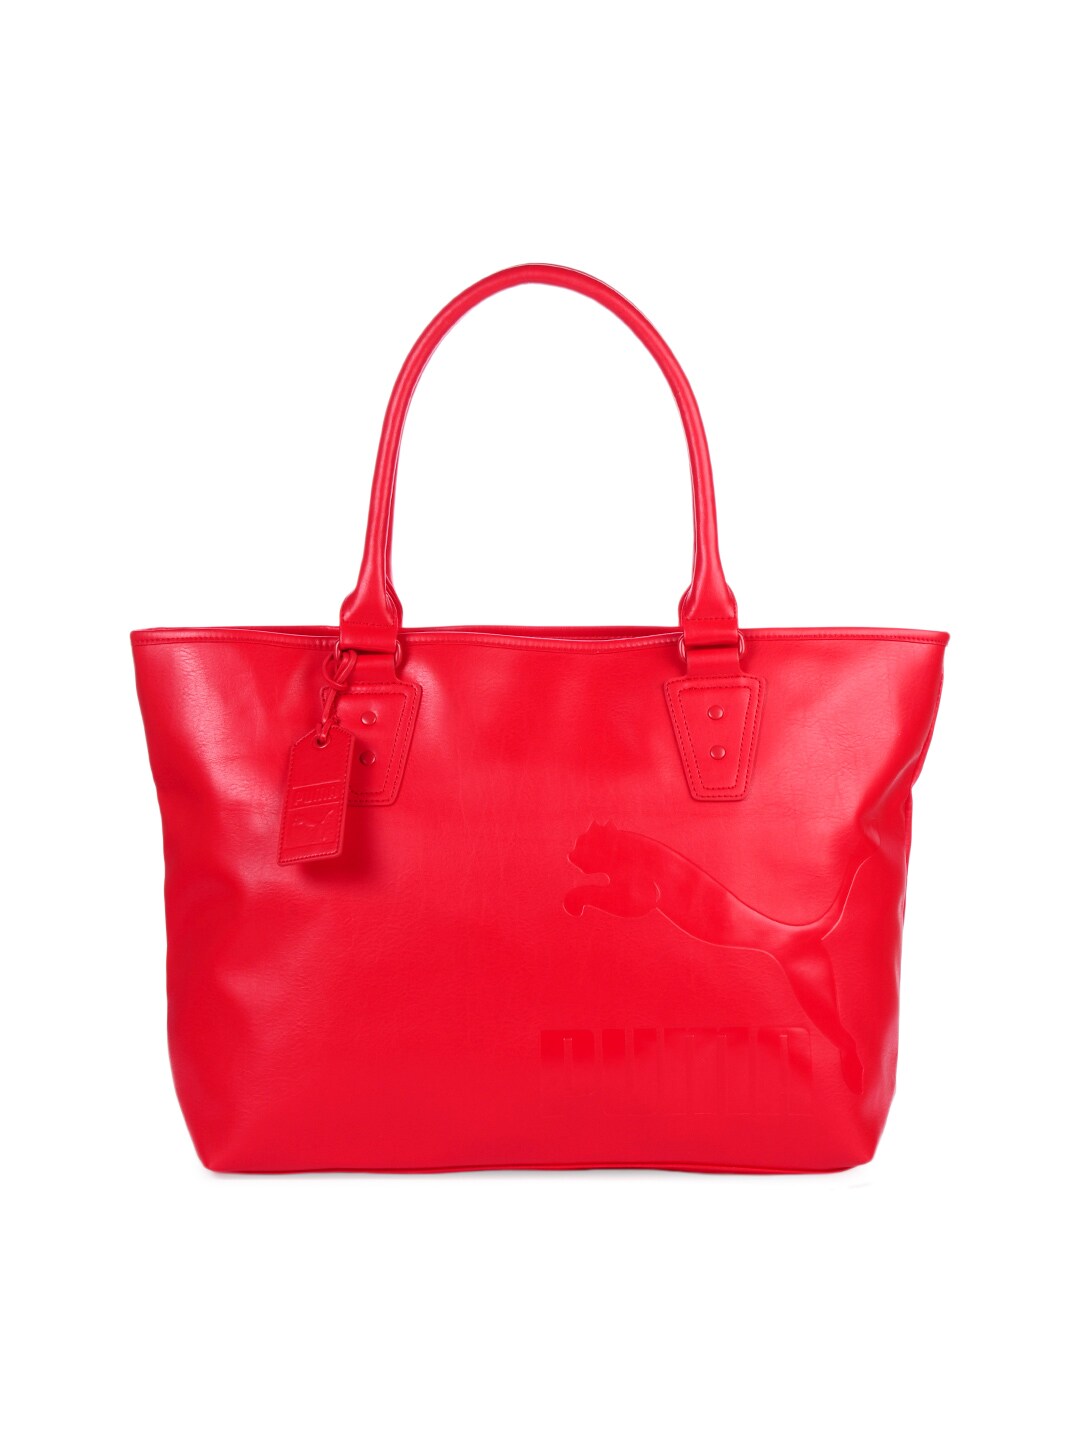 Puma Women Originals Mono Red Handbag